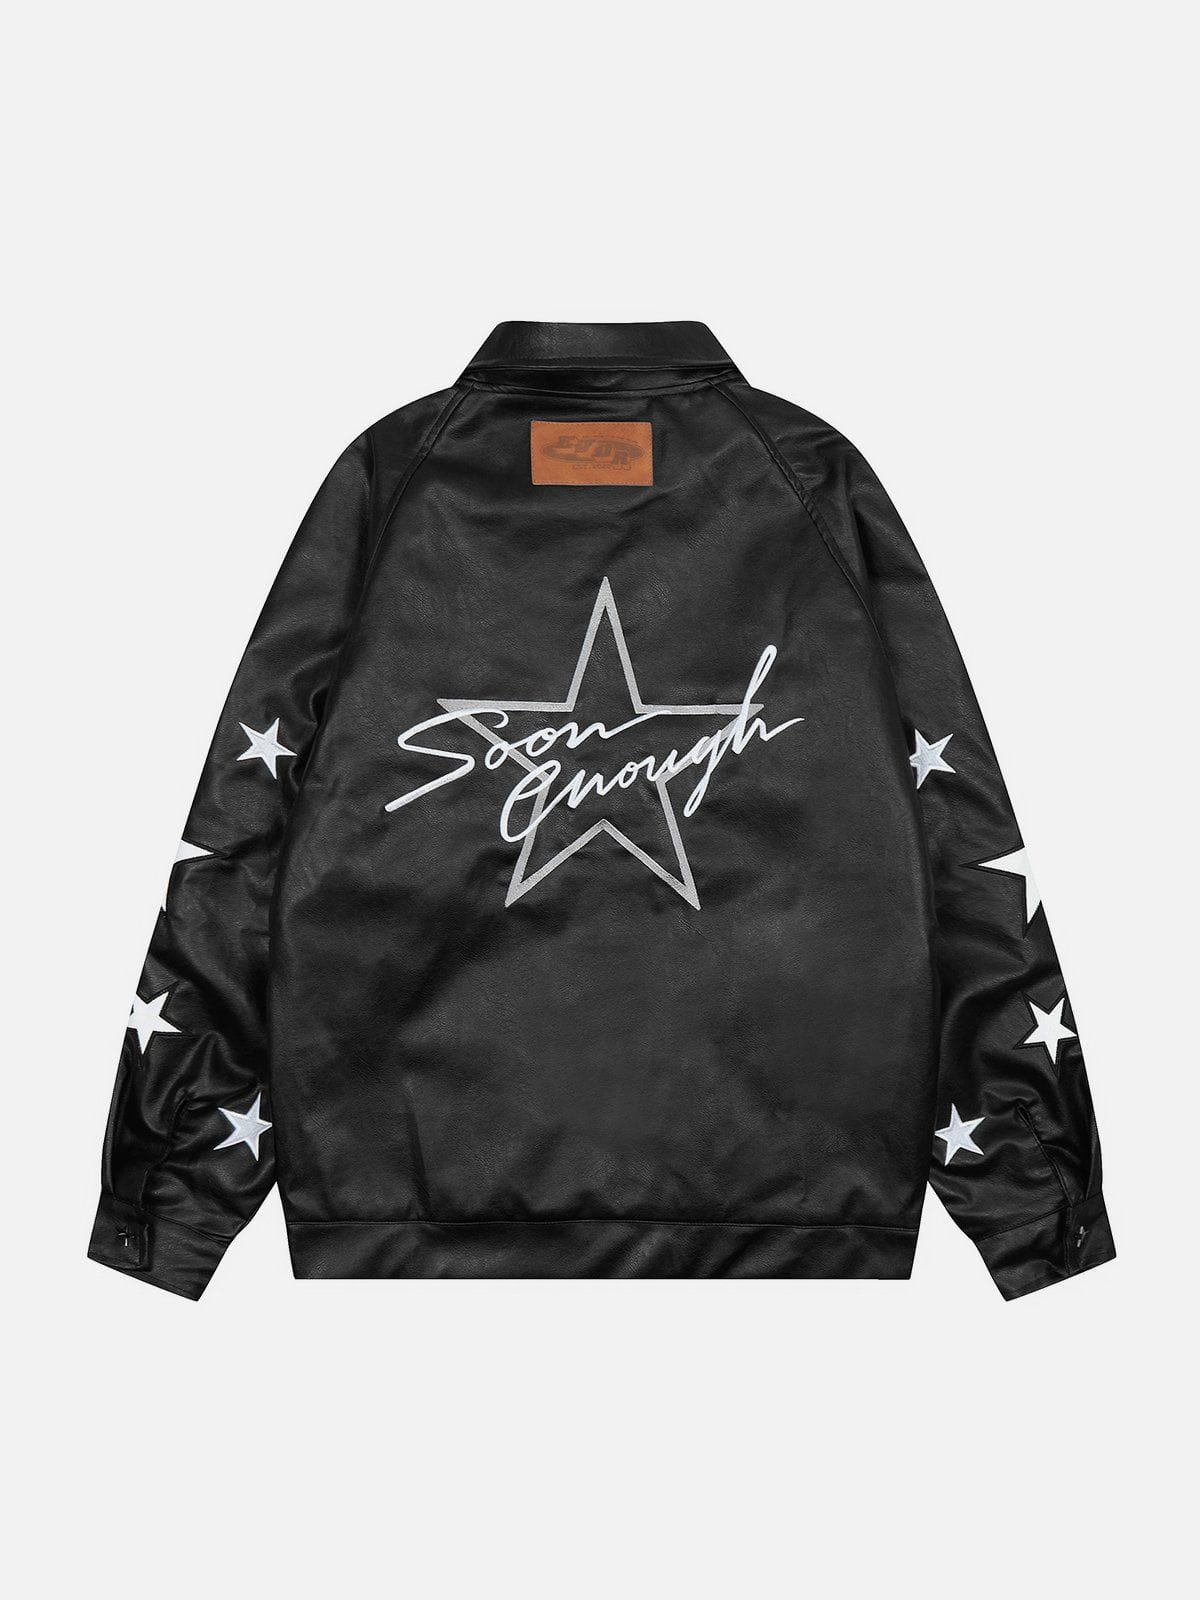 Eprezzy® - Star Embroidery Leather Jacket Streetwear Fashion - eprezzy.com